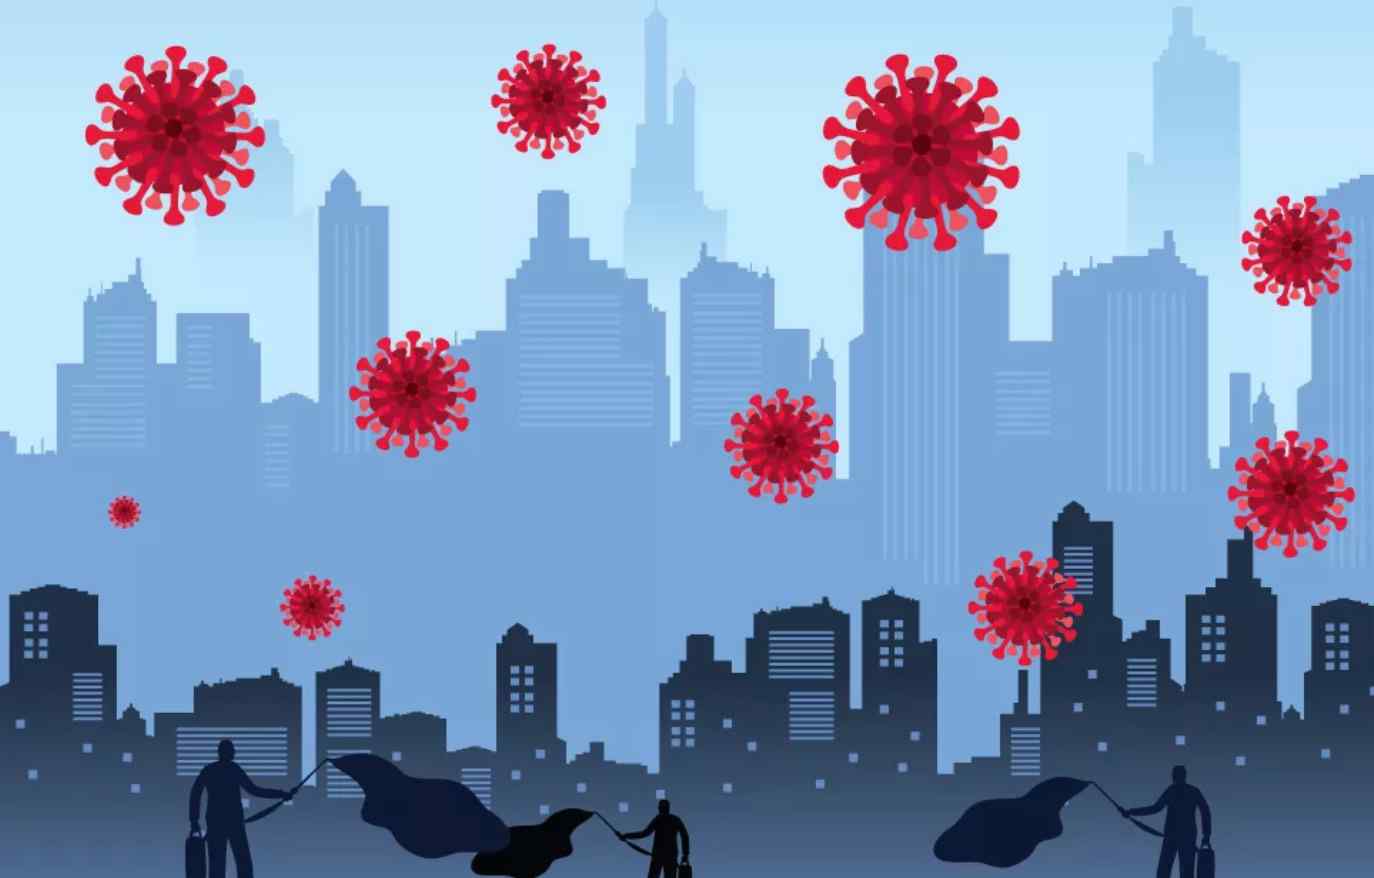  Shifrat rekord rikthejnë frikën – Çfarë po ndodh në botë me pandeminë?